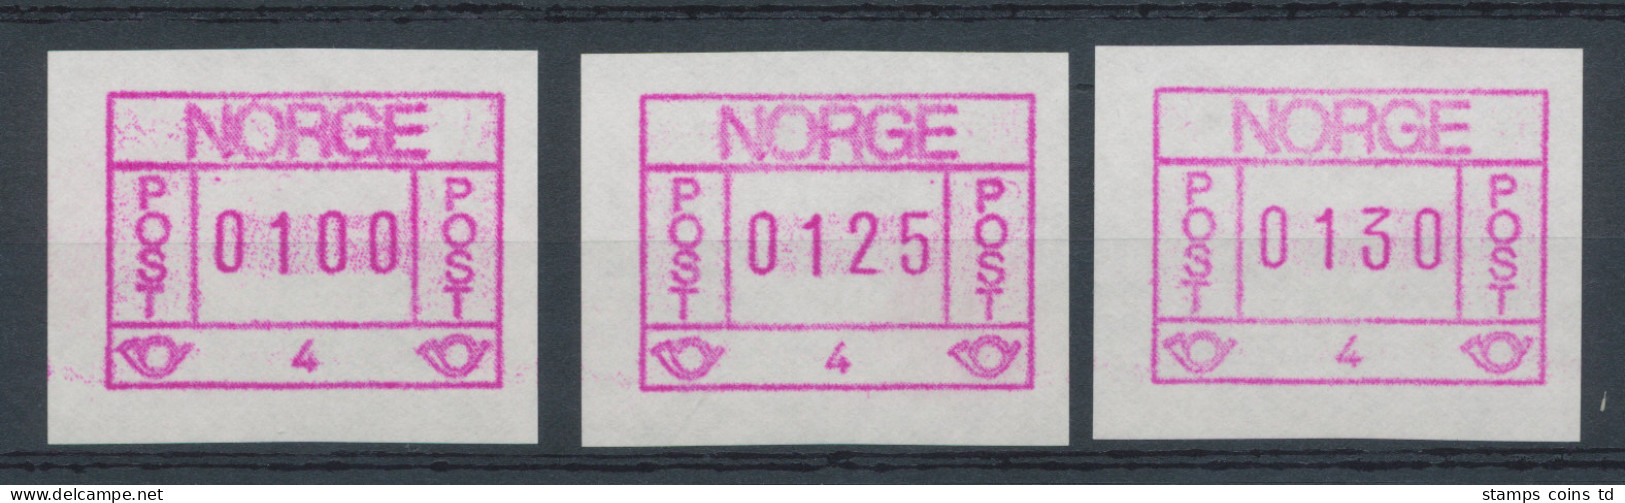 Norwegen Frama-ATM 1978, Aut.-Nr. 4 (Trondheim) Tastensatz 100-125-130 ** - Automatenmarken [ATM]